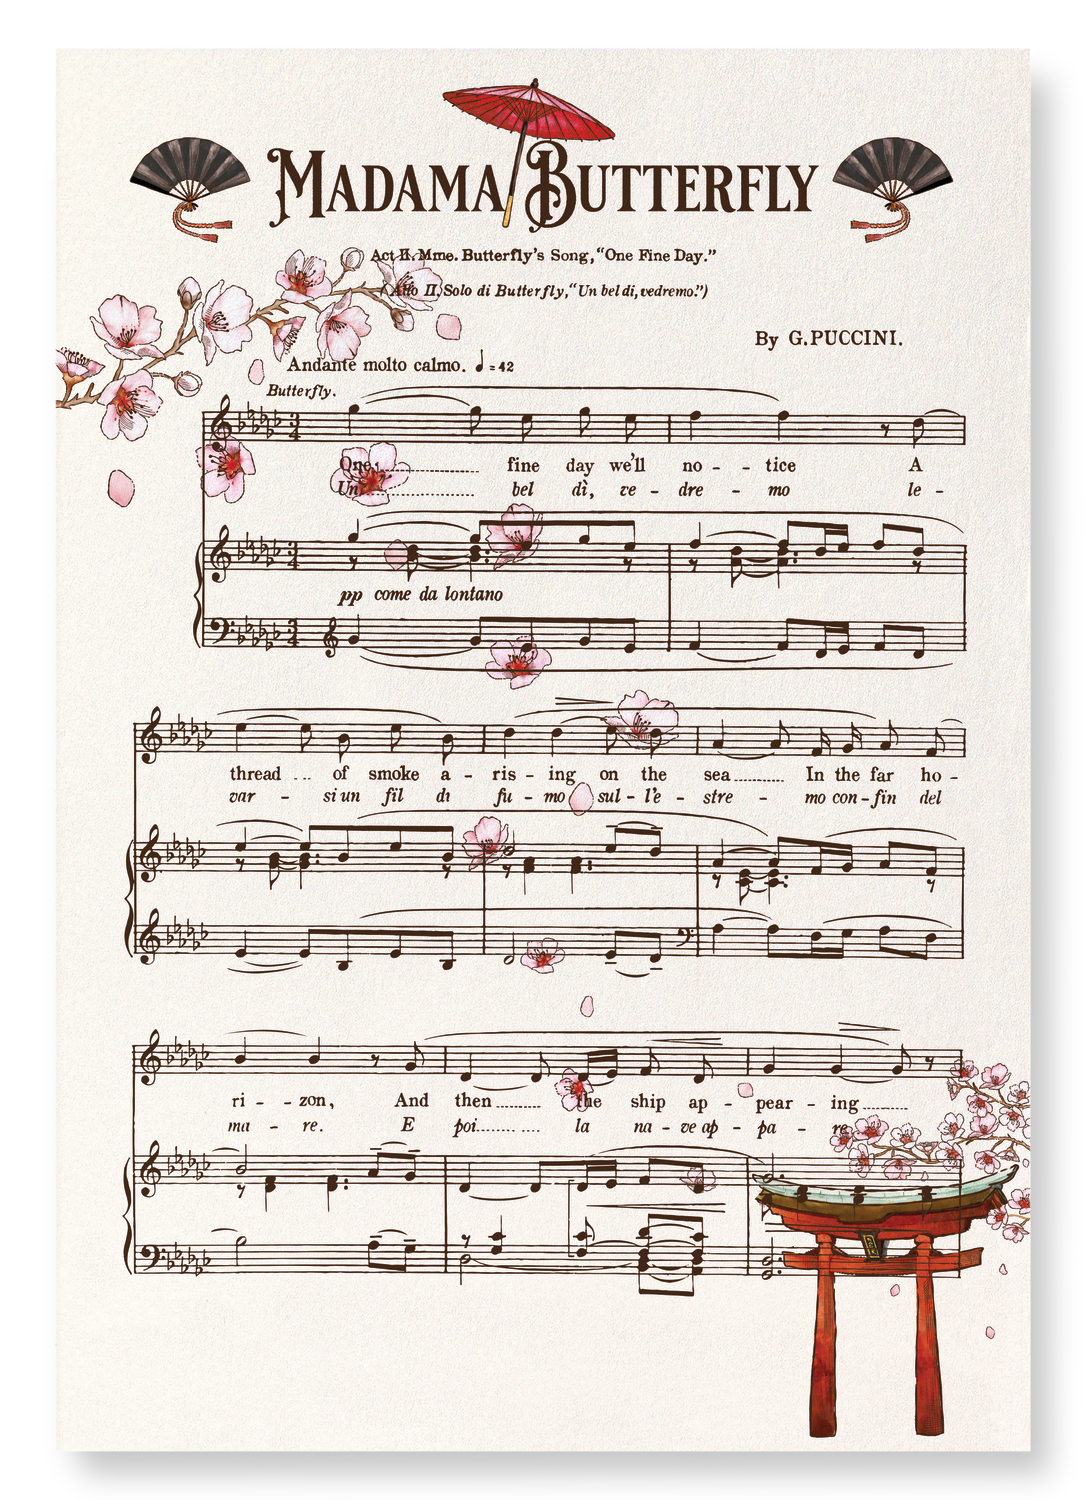 MADAMA BUTTERFLY MUSIC SCORE (1904)